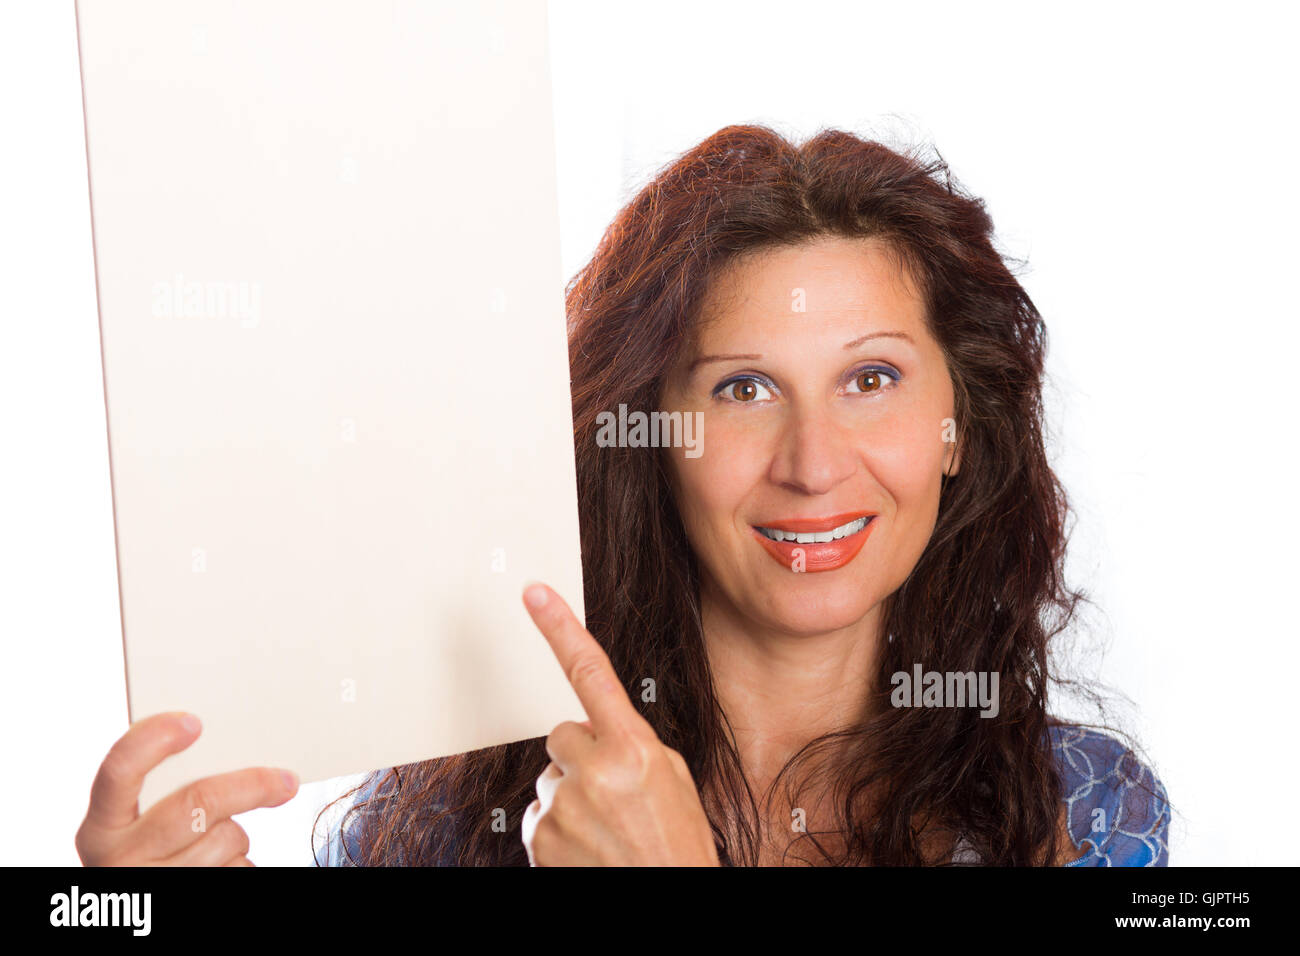 Happy Reife Frau mit arabischen und nahöstlichen somatische Merkmale und gefärbt mit Henna Haare lächelt ihr Finger auf leeren weißen Schild, den sie im Hochformat hält Stockfoto